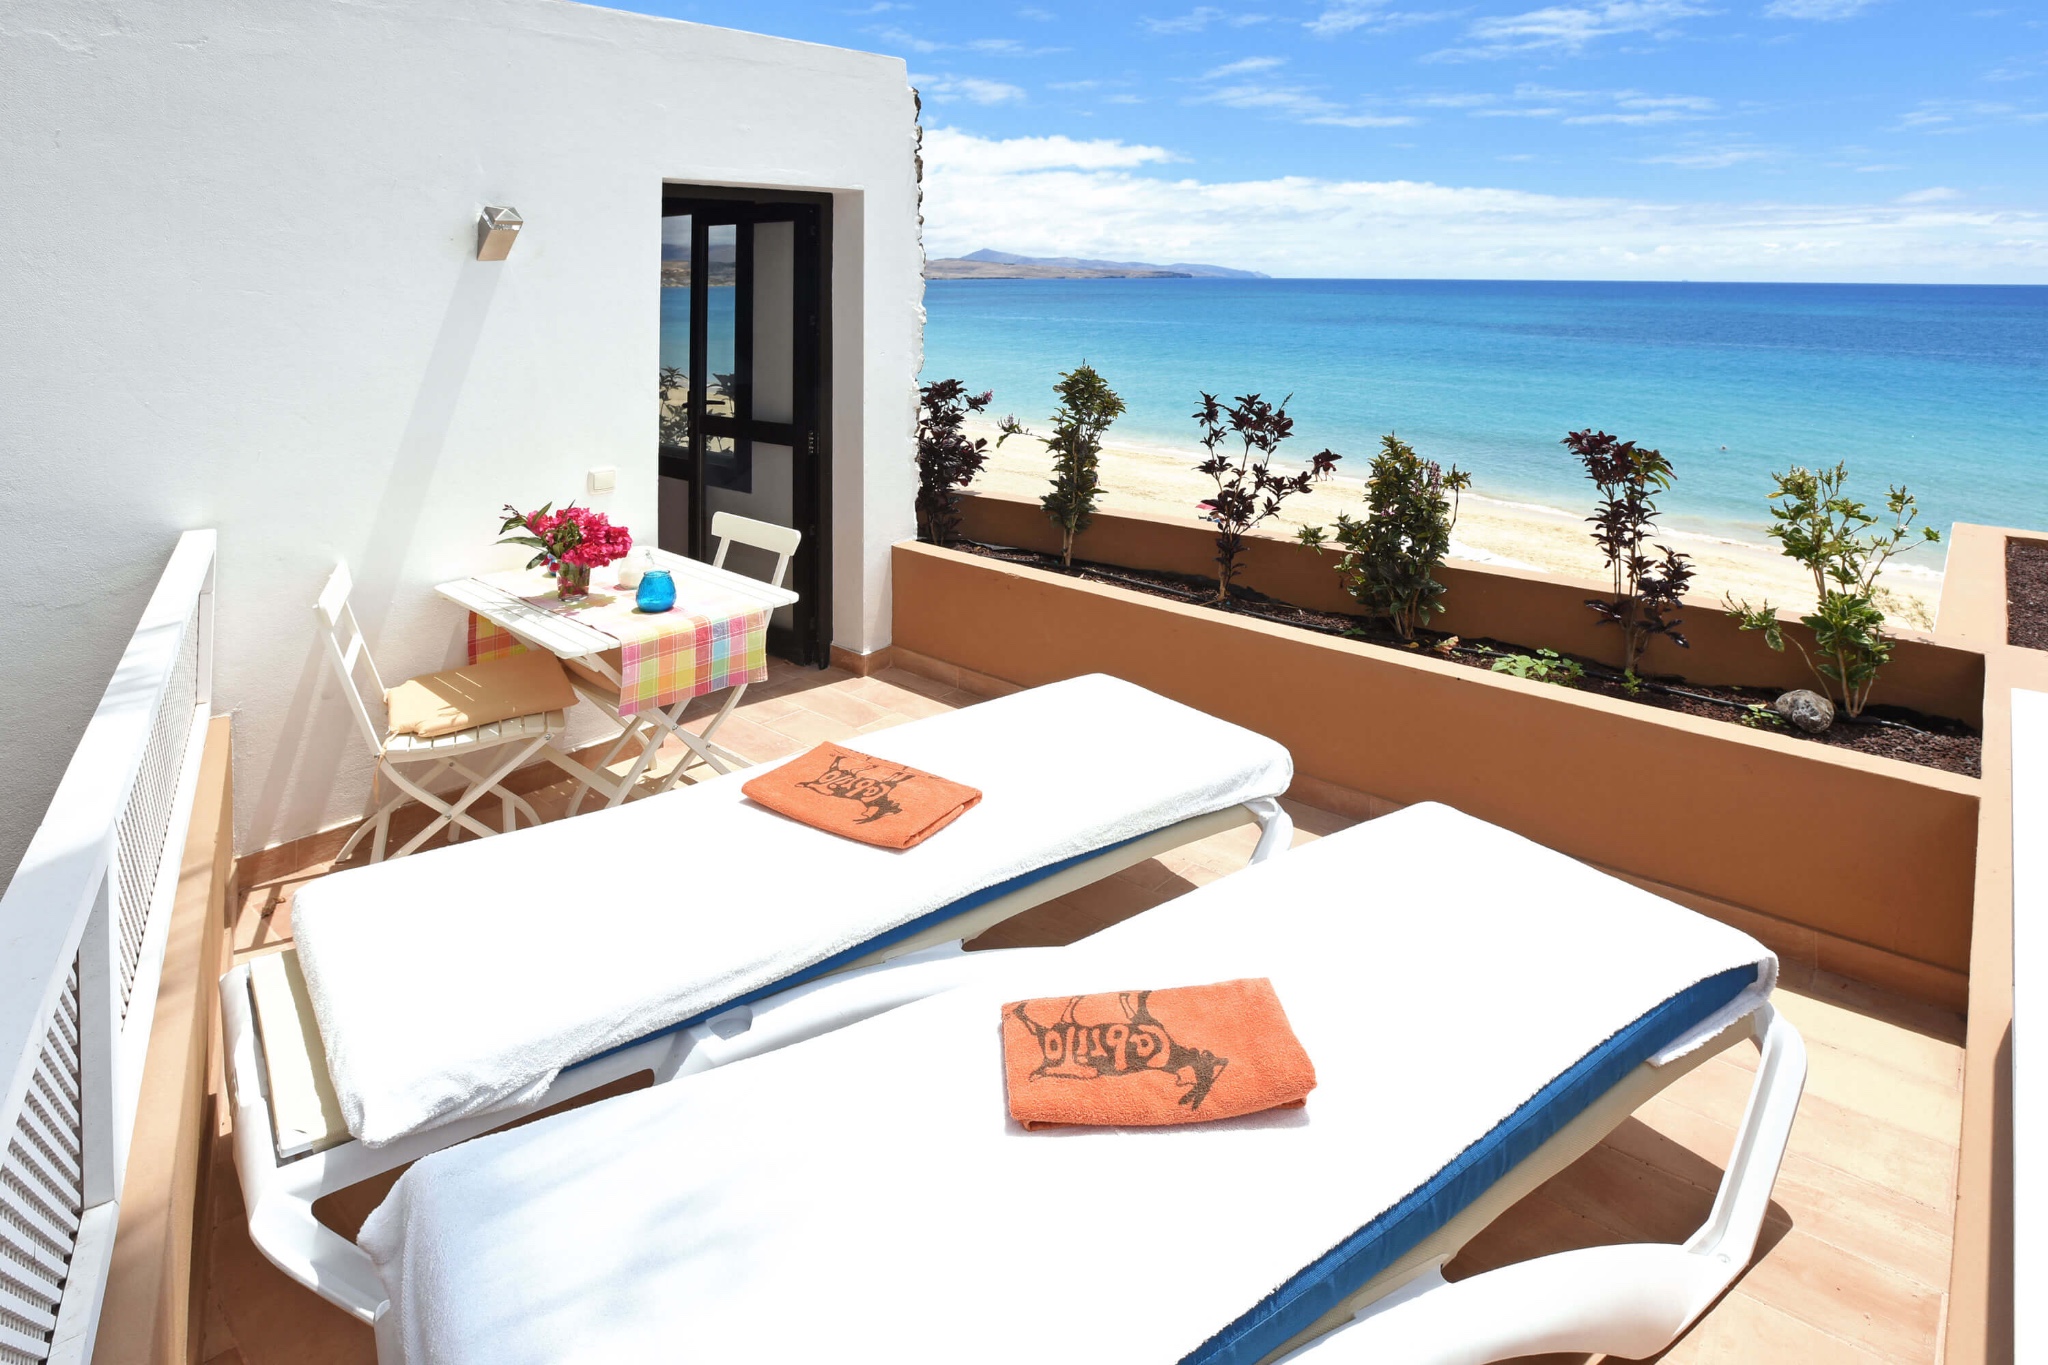 Den moderne feriehus for 2 personer ligger på stranden i Costa Calma med fantastisk sjøutsikt